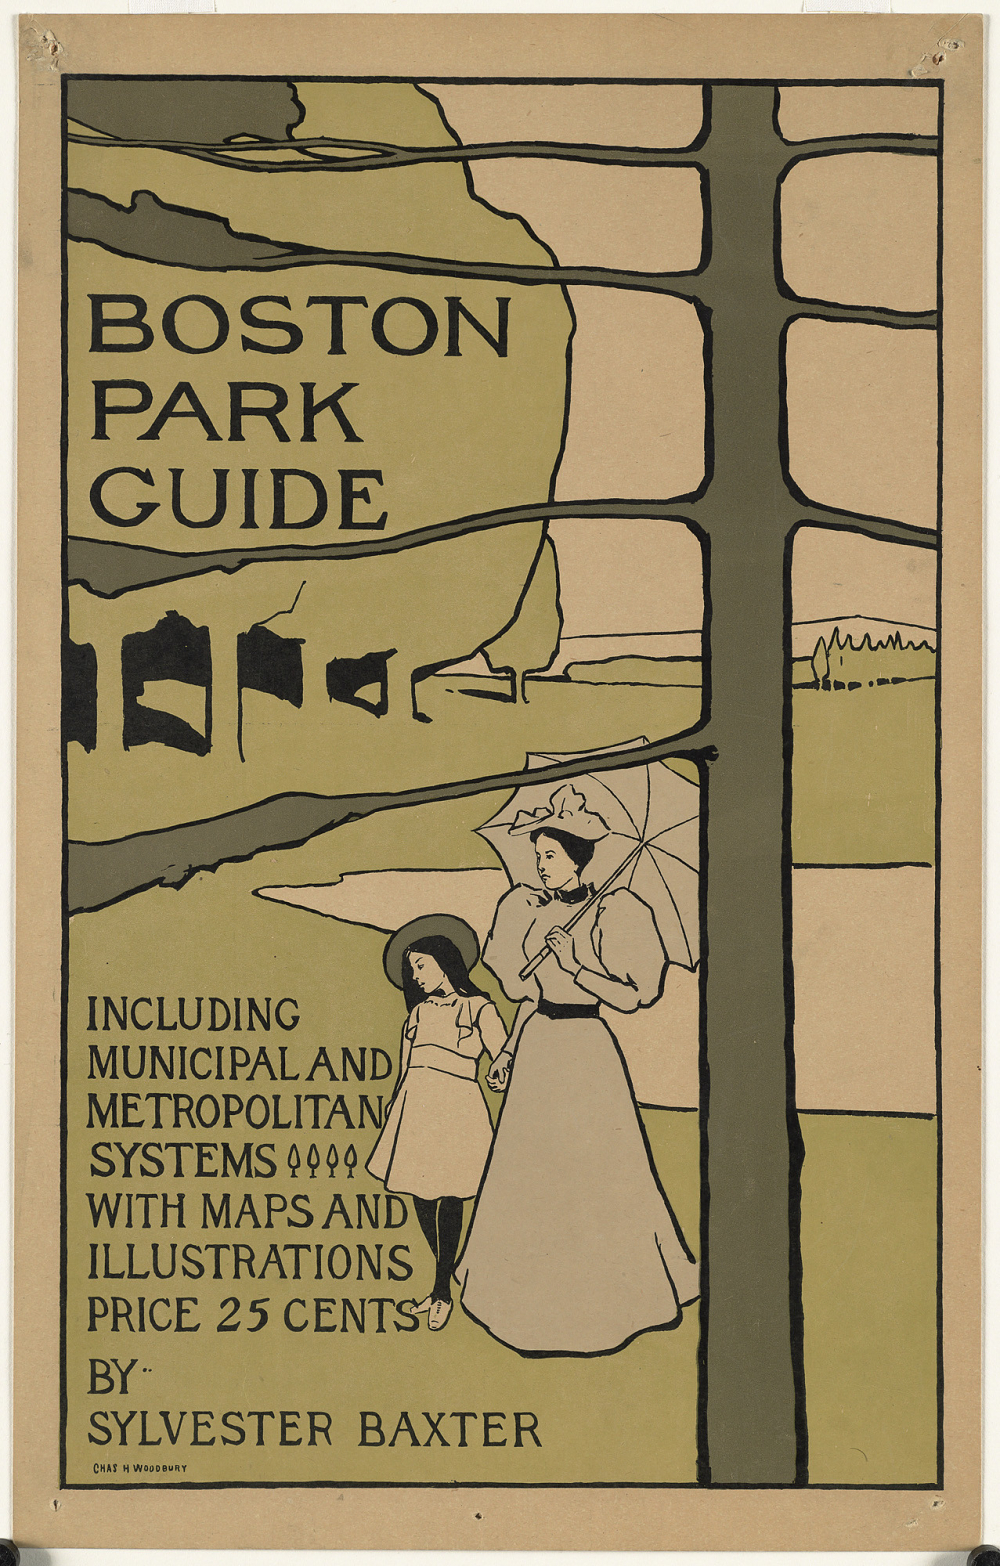 Boston park guide, circa 1895